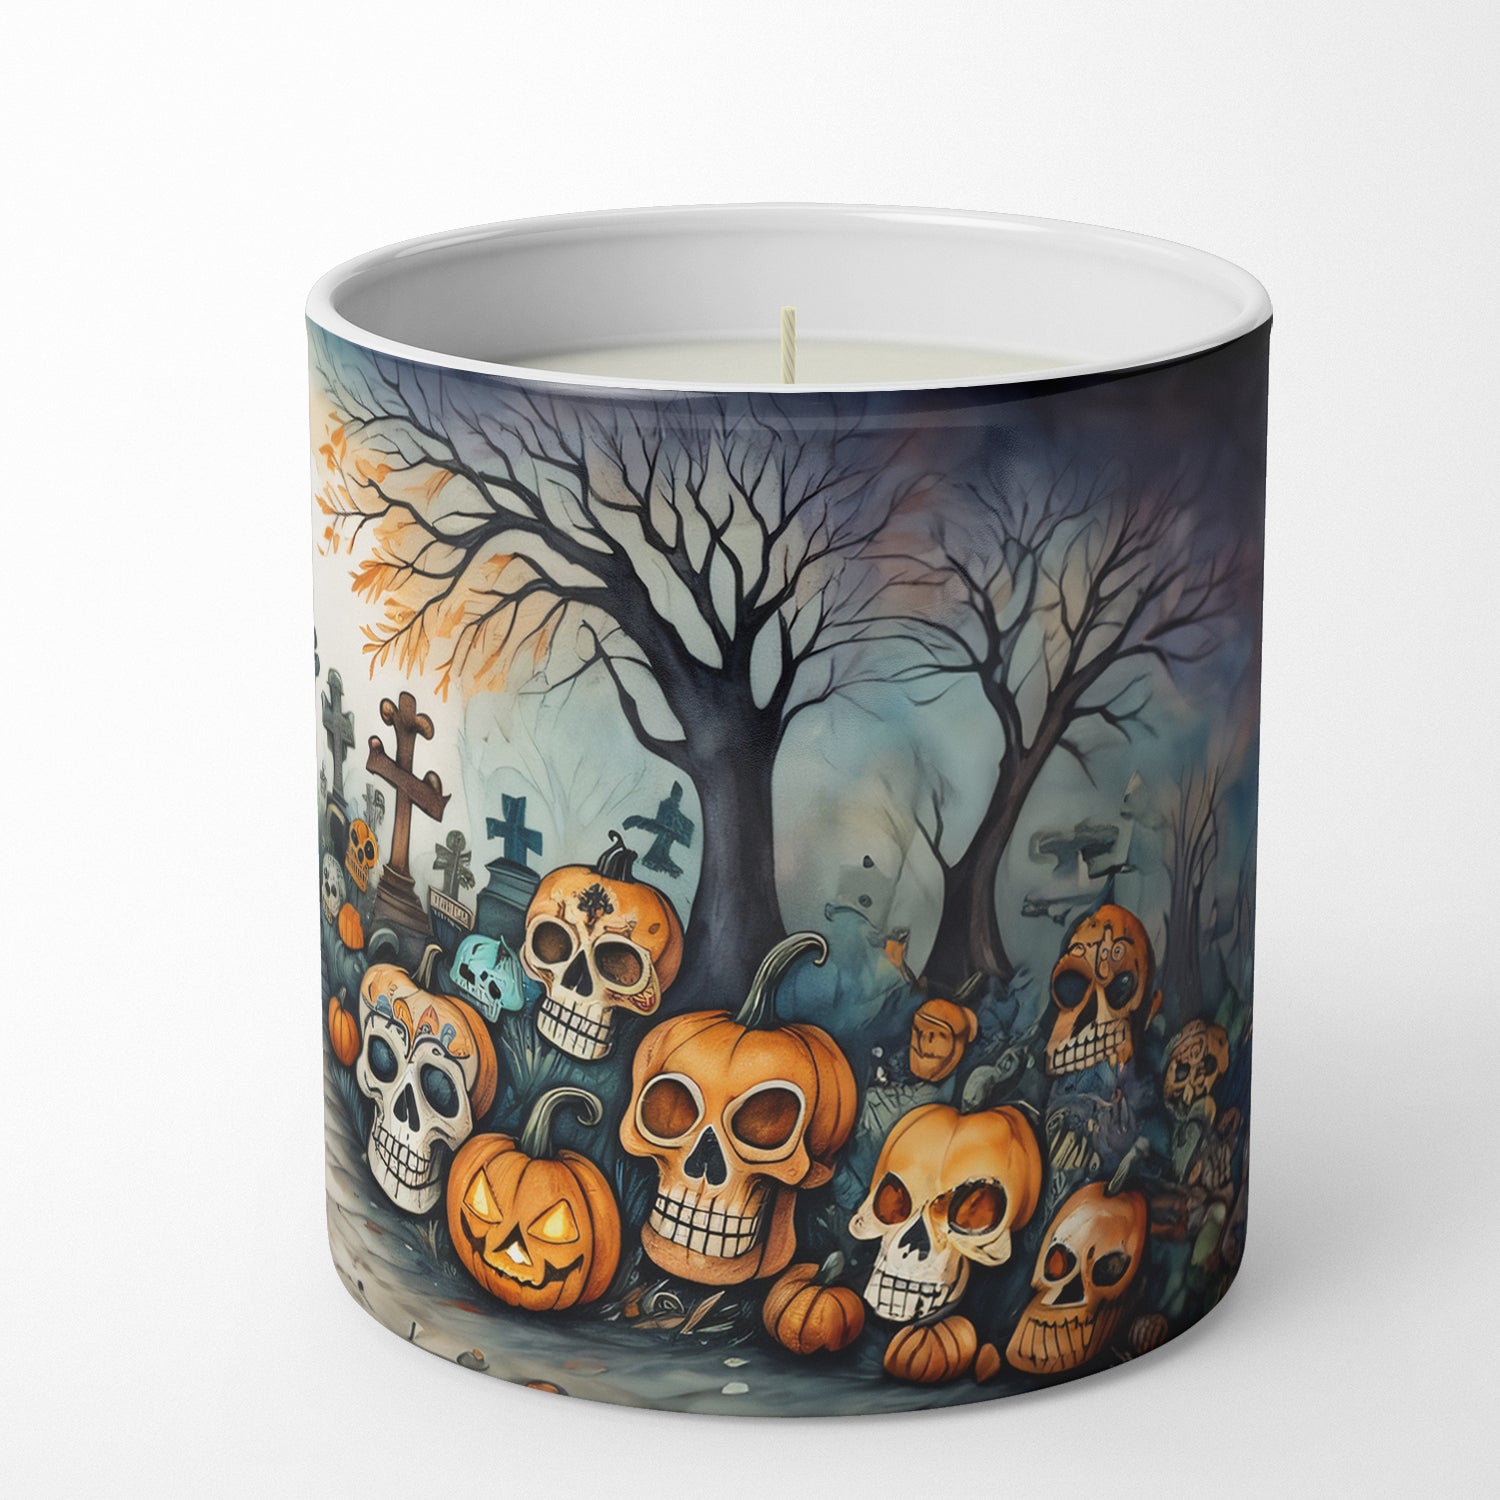 Calaveras Sugar Skulls Spooky Halloween Decorative Soy Candle